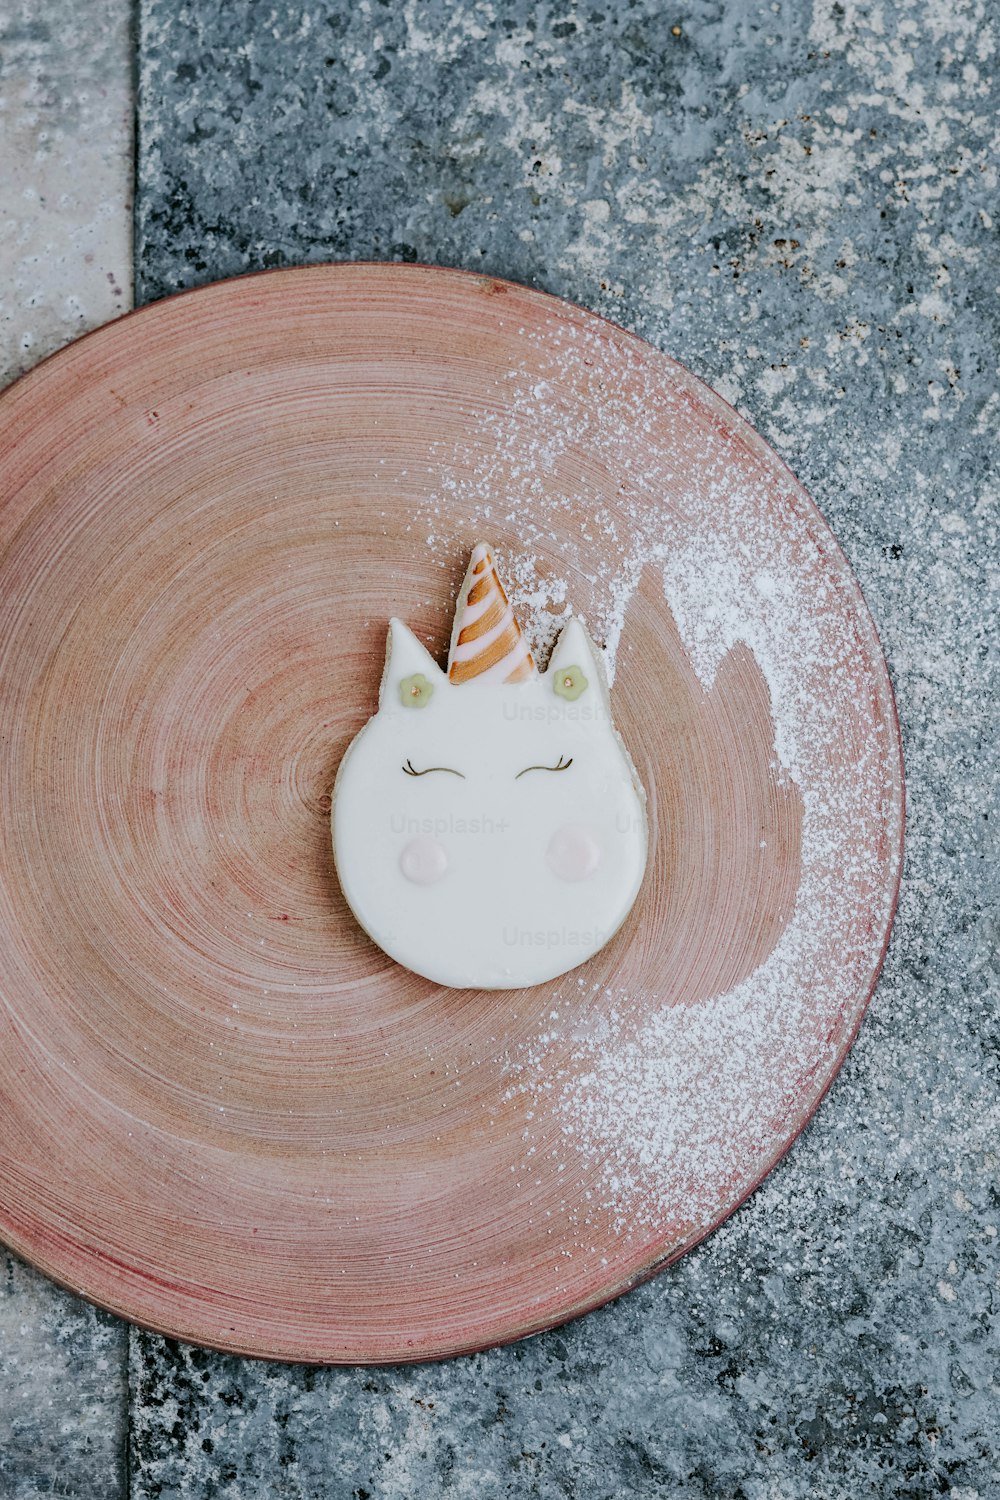 a plate with a cake shaped like a unicorn